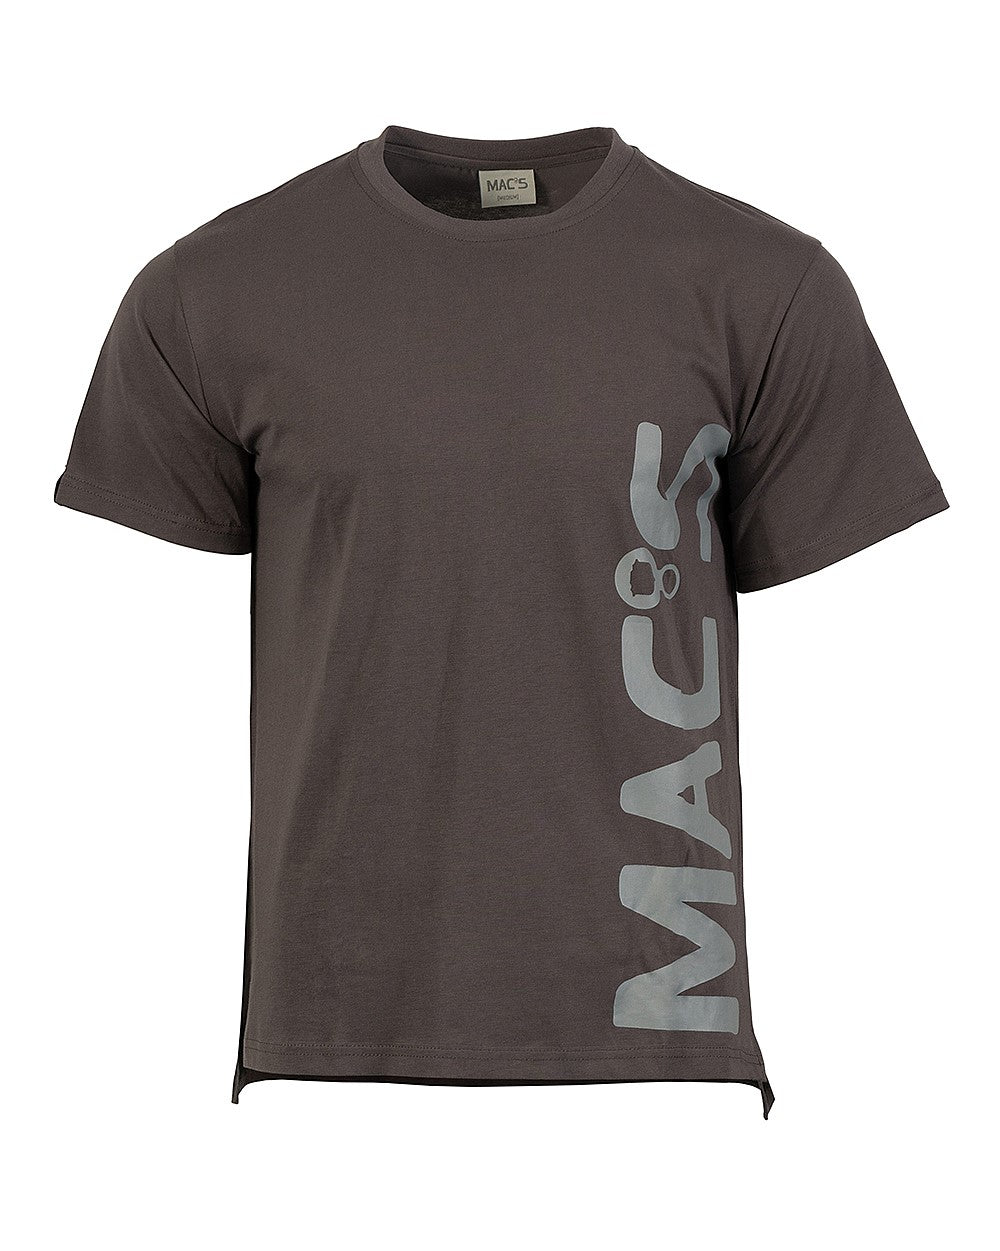 MAC's Tee - Wear It Proud NZL